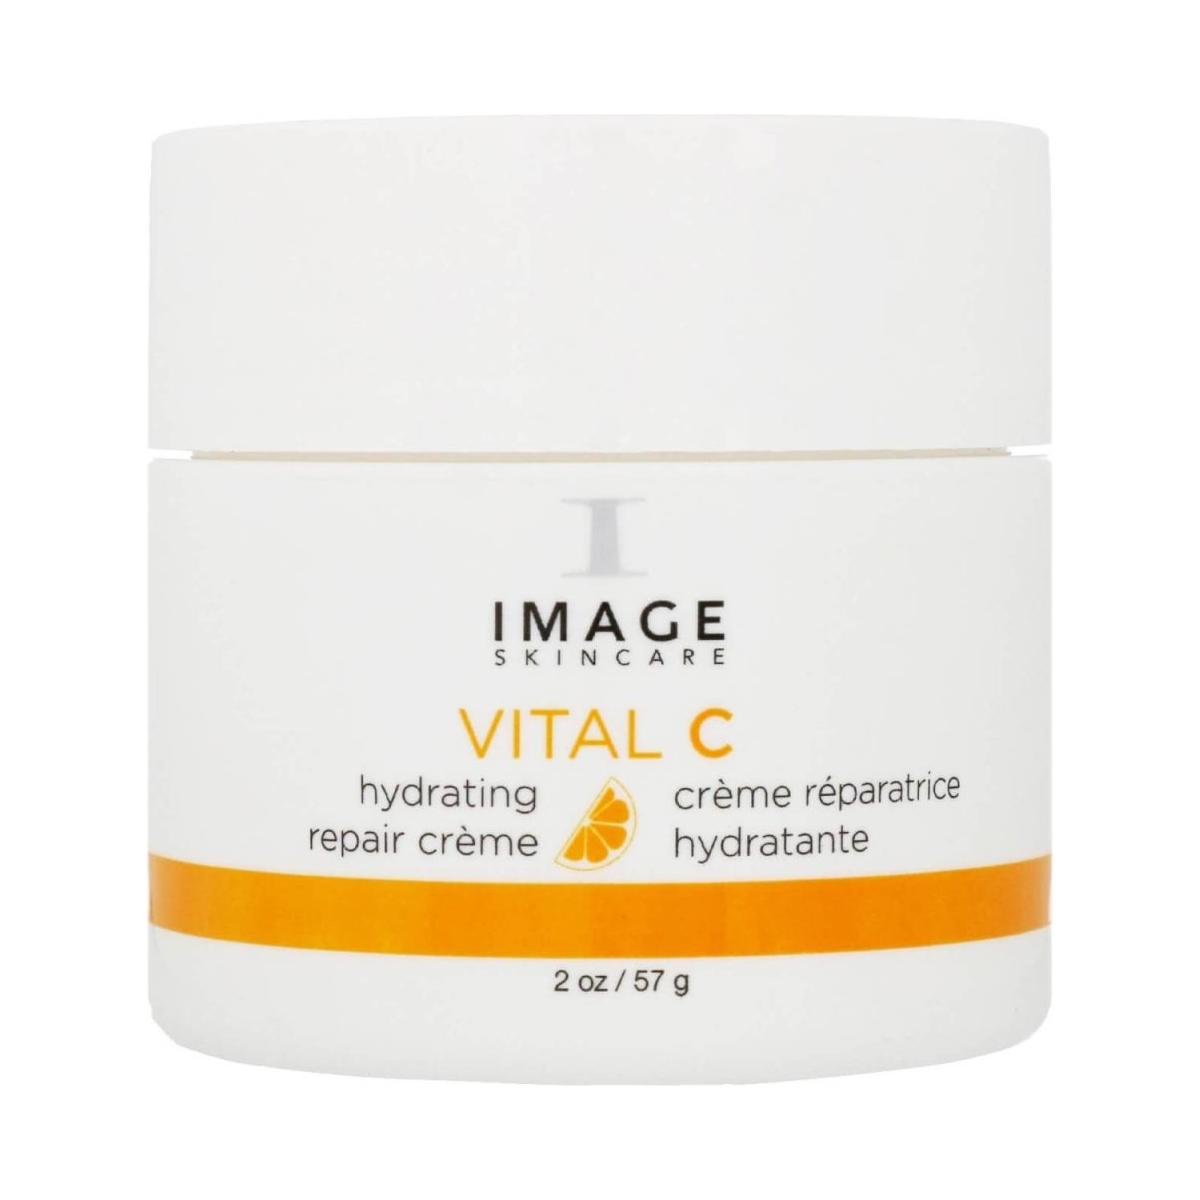 Image Skincare Vital C Hydrating Repair Creme 57g - Glam Global UK